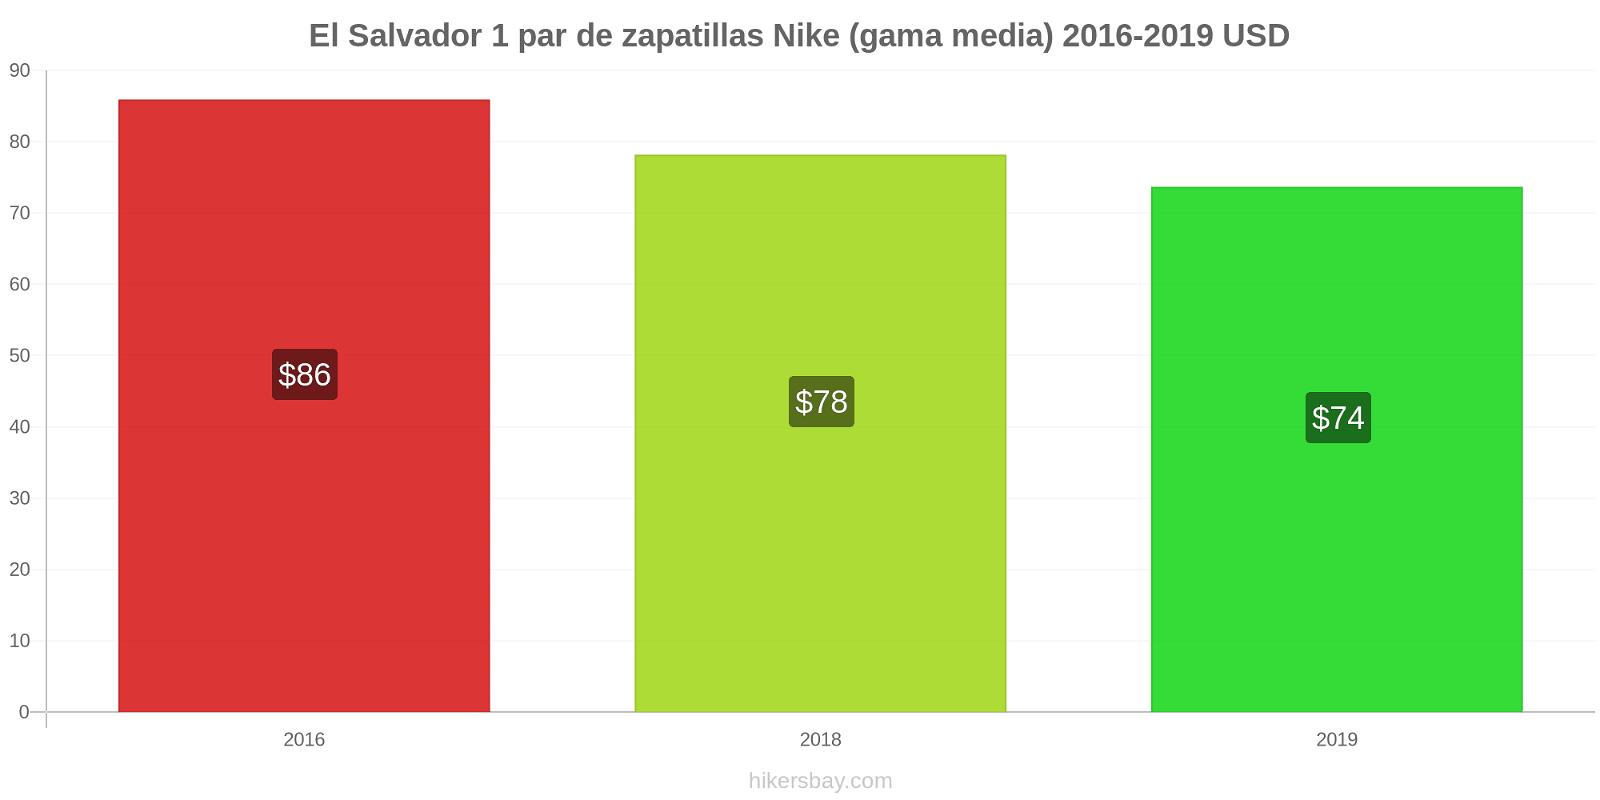 El Salvador cambios de precios 1 par de zapatillas Nike (gama media) hikersbay.com